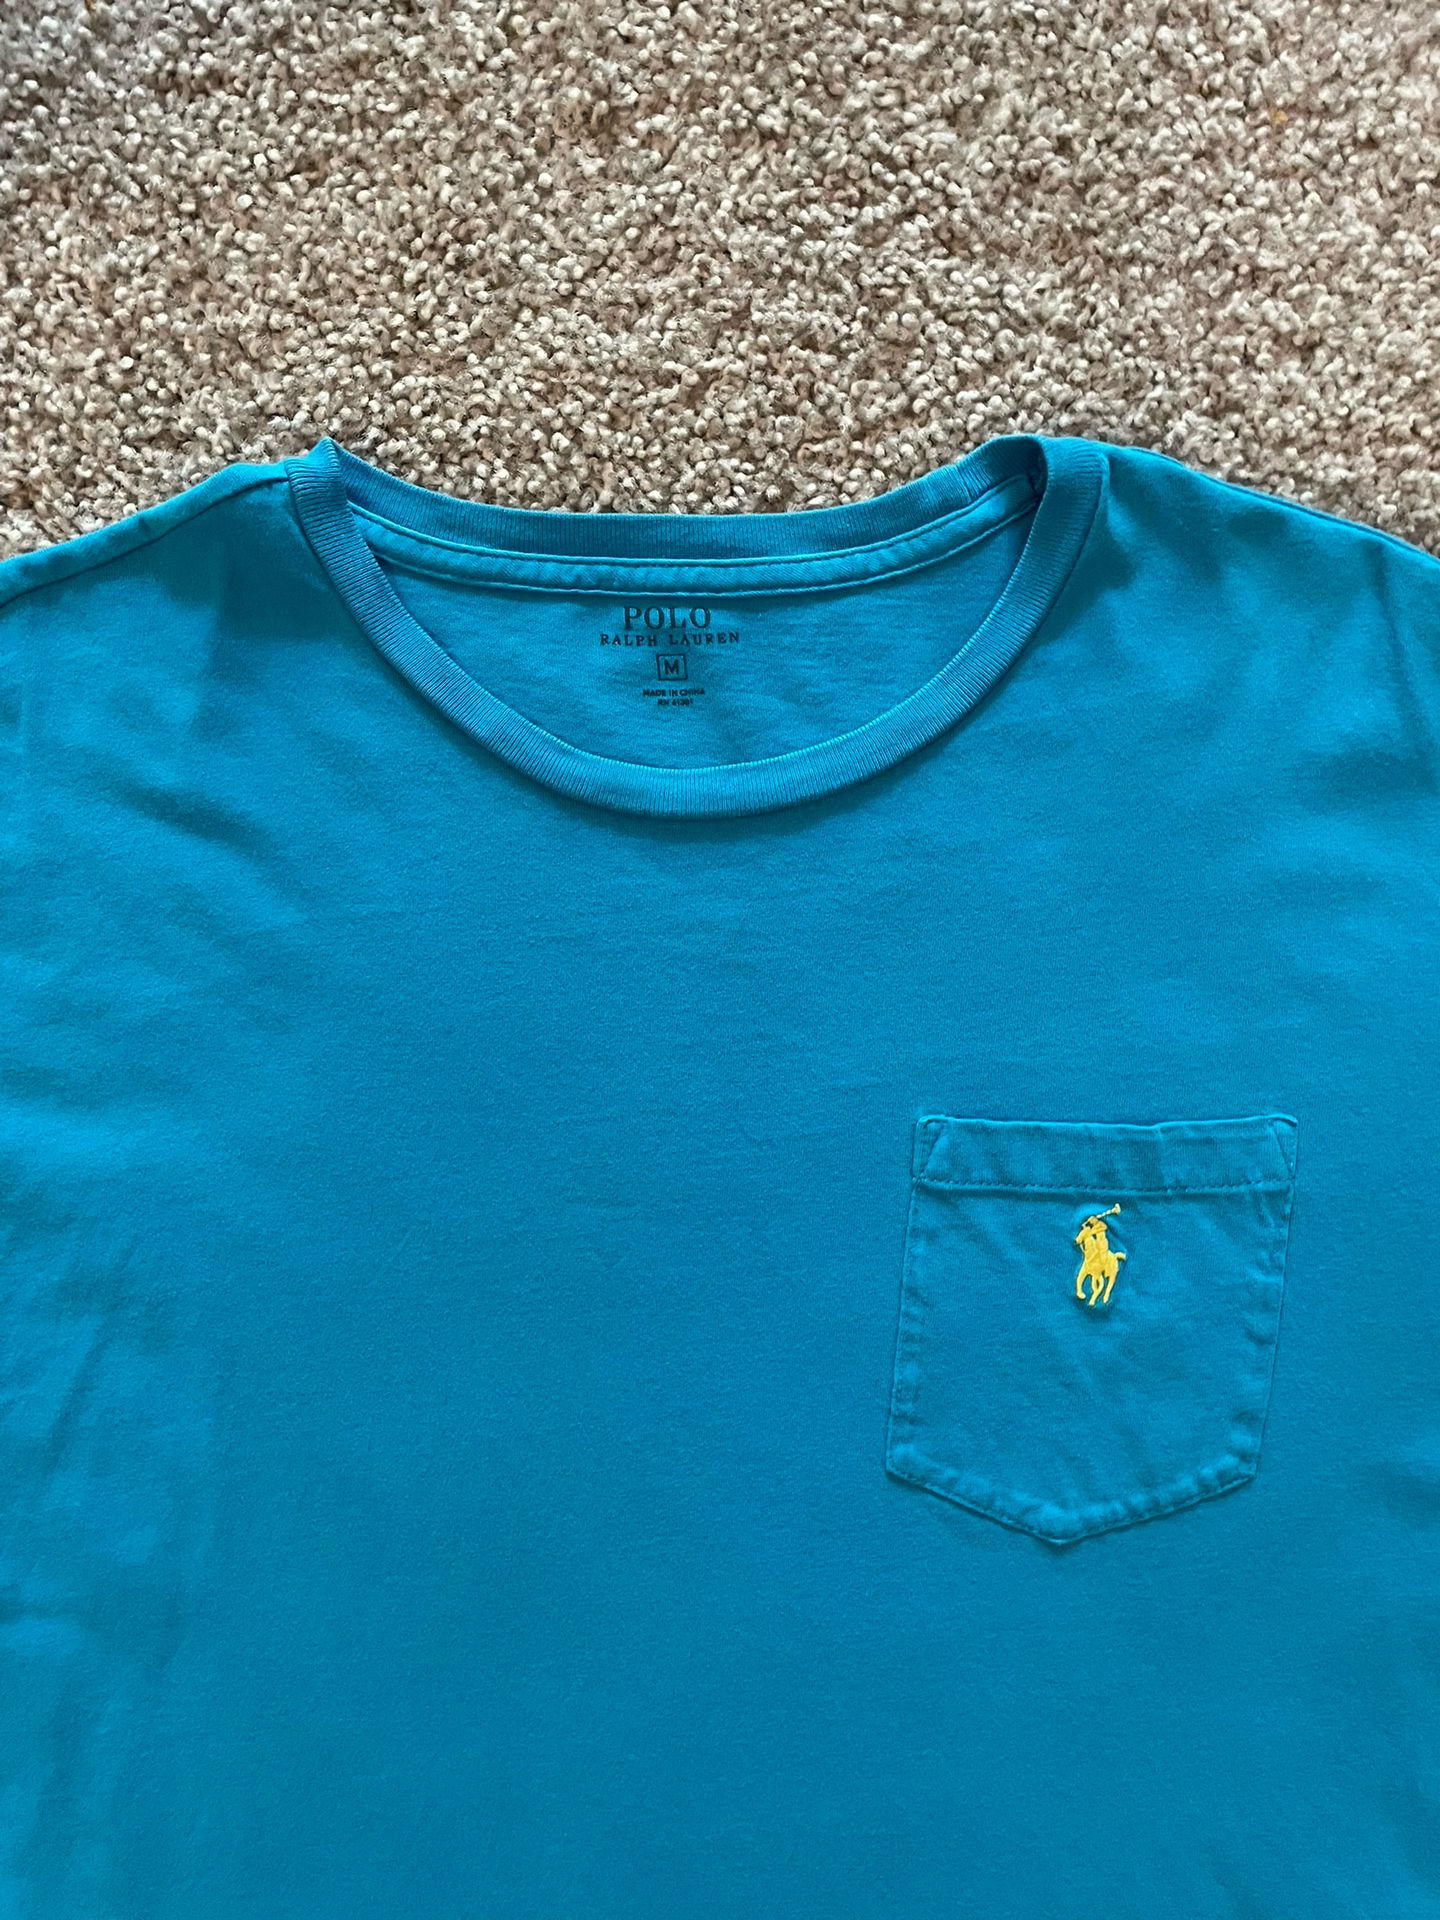 Polo Ralph Lauren T Shirt Men Light Blue Short Sleeve Pocket Crew Neck